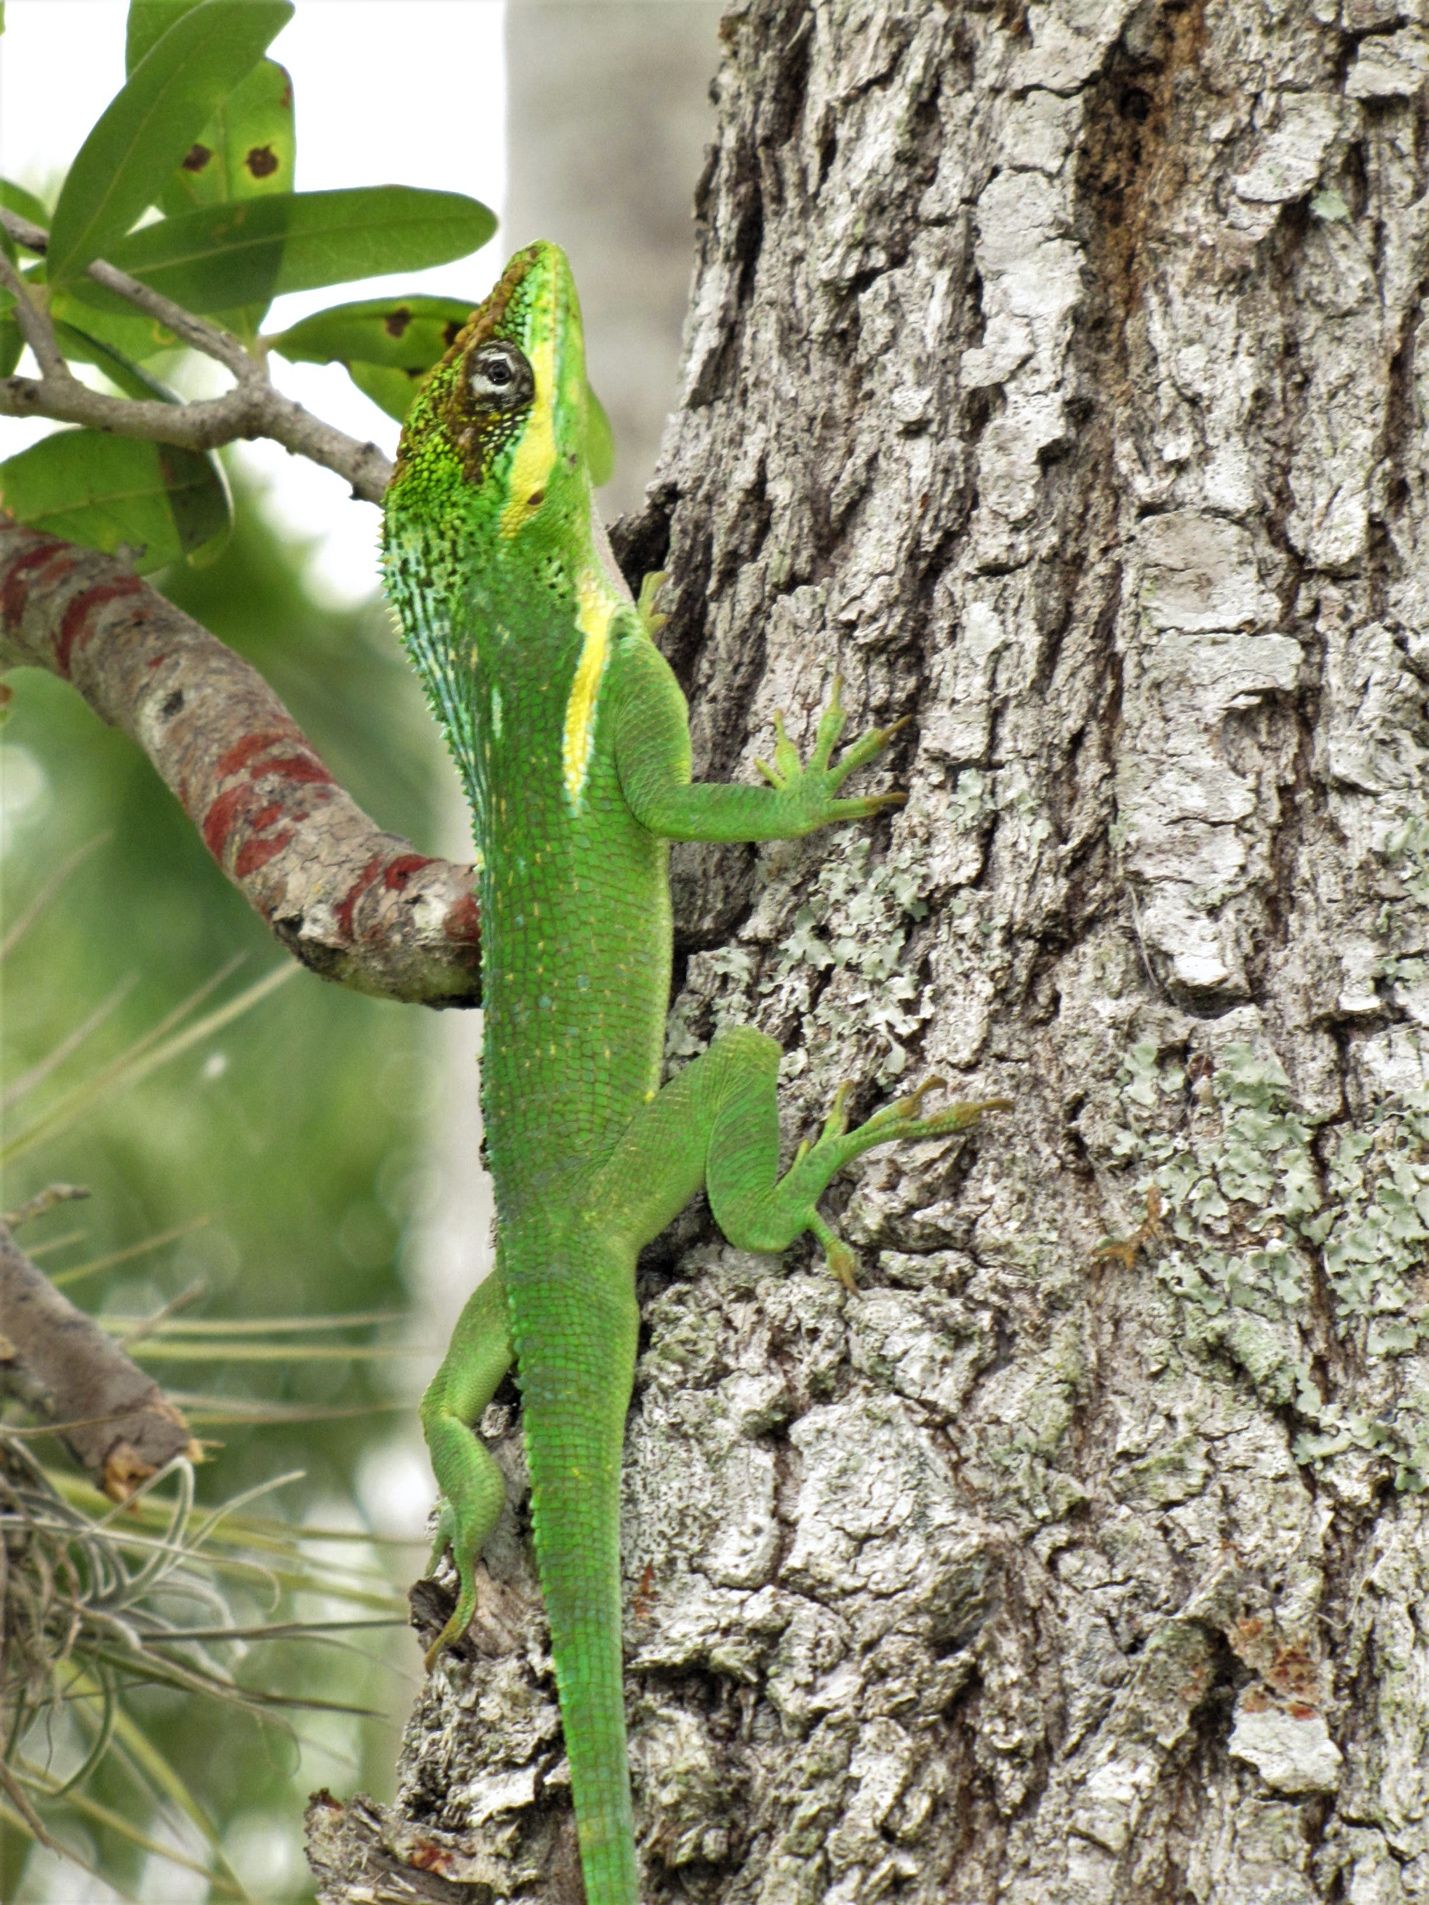 Un anolis cubano gigante (Anolis equestris) puede confundirse con una iguana verde (Iguana iguana) muy pequeña, pero las iguanas verdes carecen de las rayas amarillas/blancas debajo de los ojos y en los hombros.